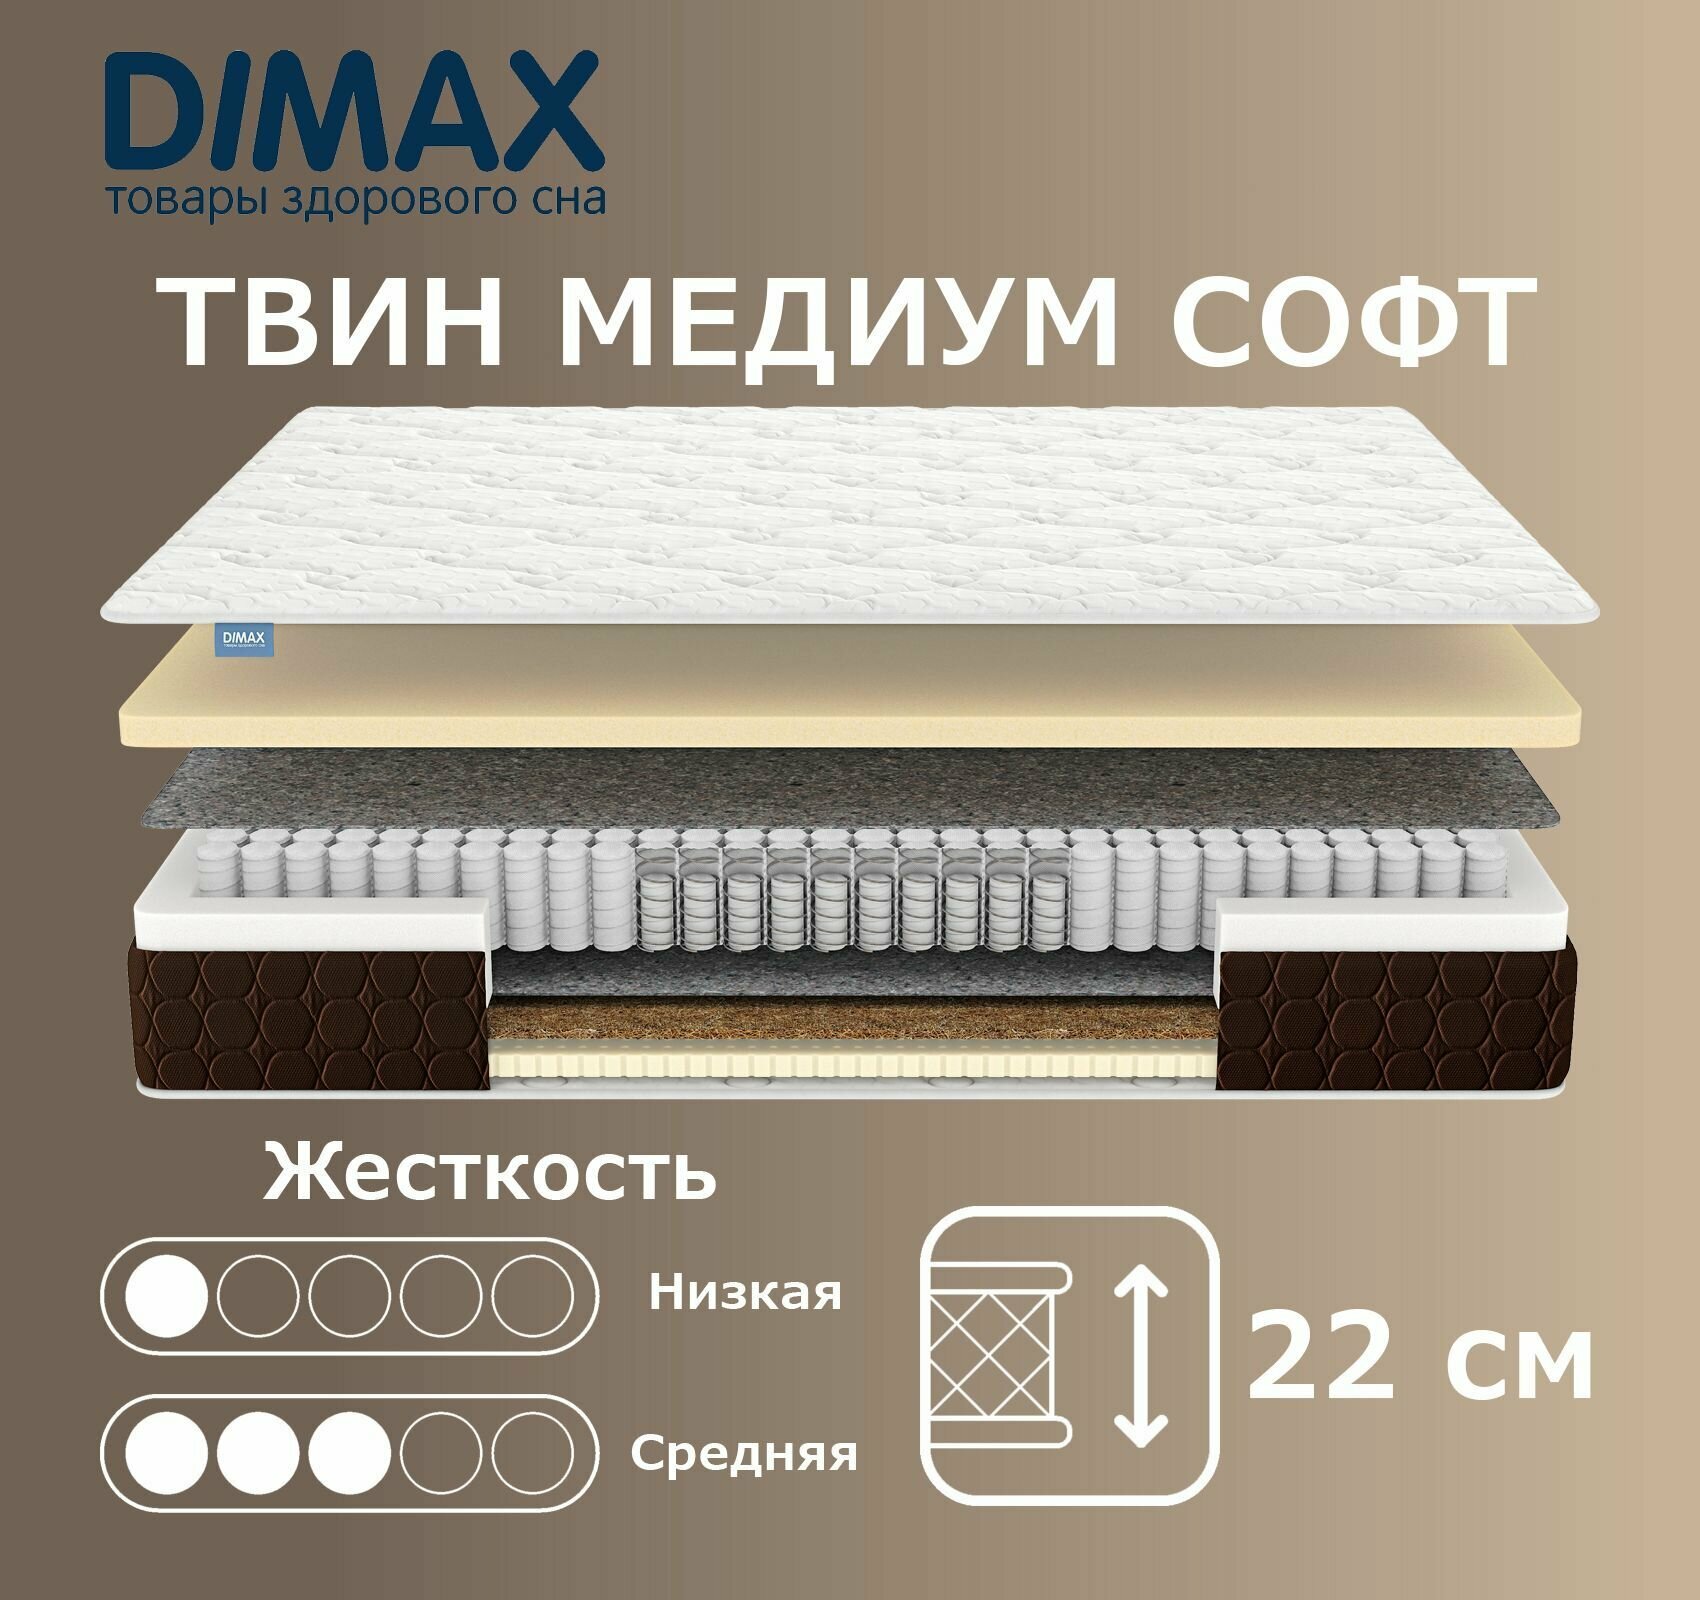 Матрас Dimax Твин Медиум Софт 90х195 см